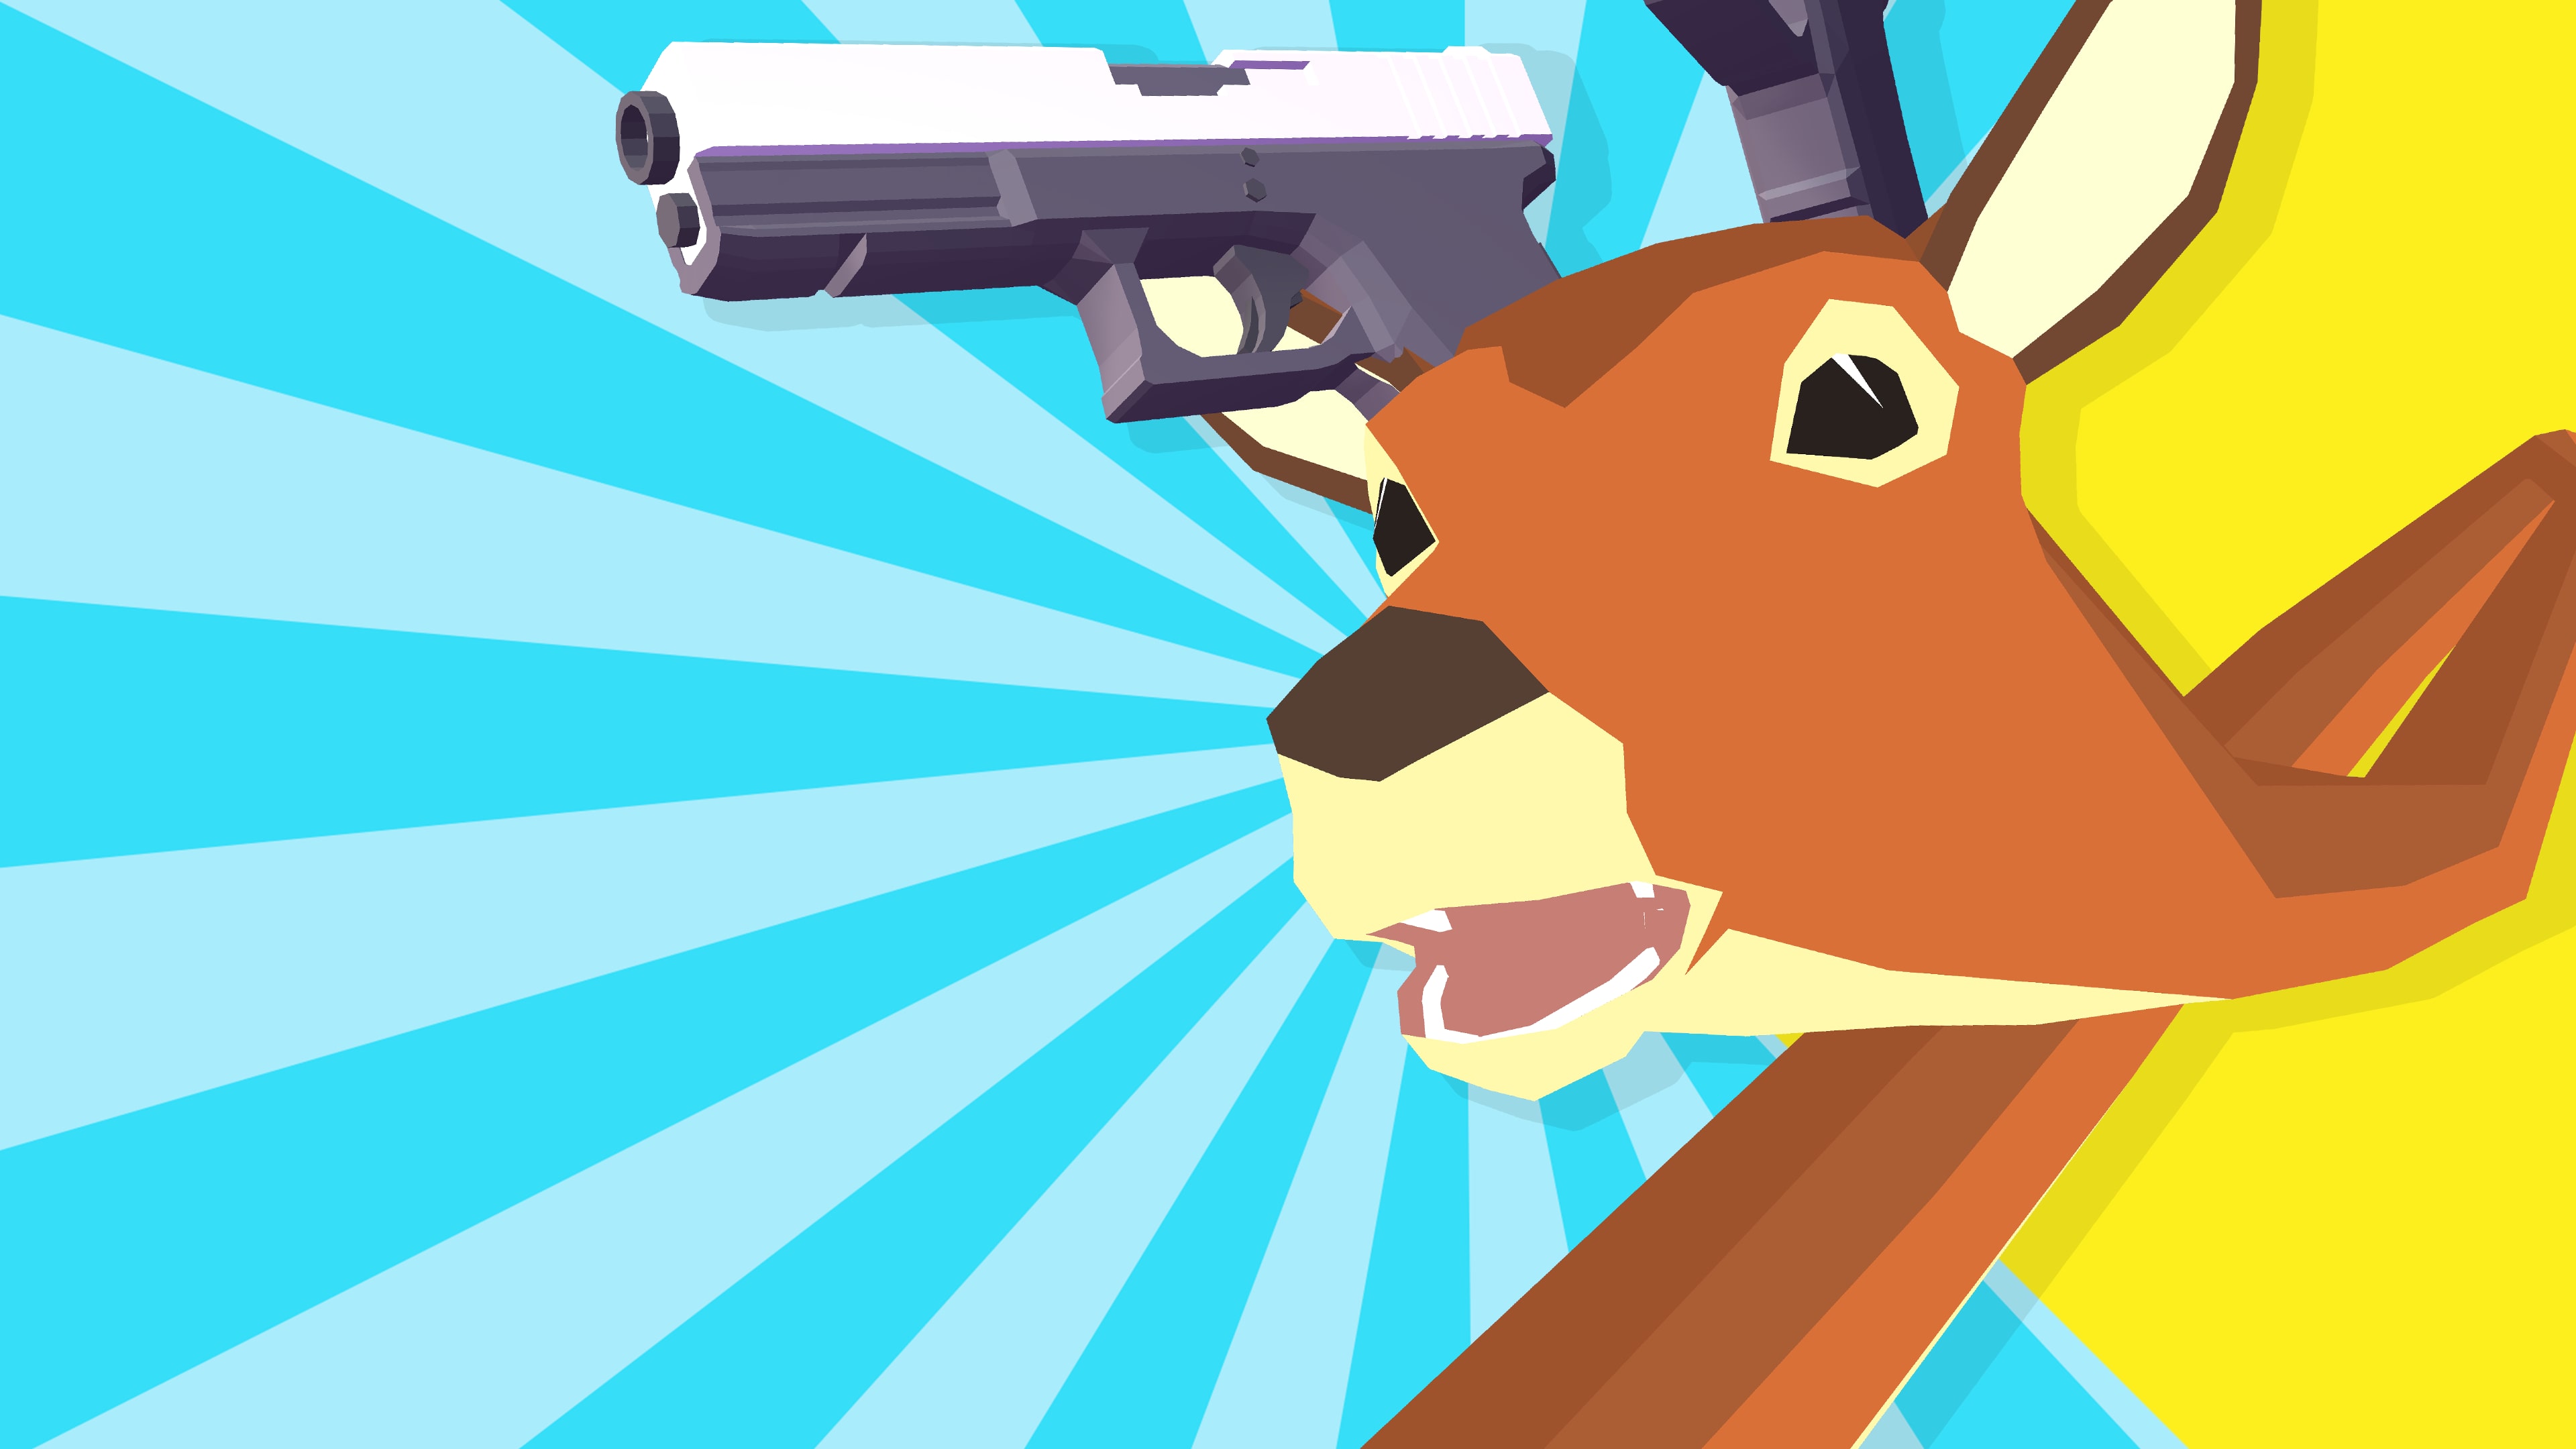 ごく普通の鹿のゲーム DEEEER Simulator